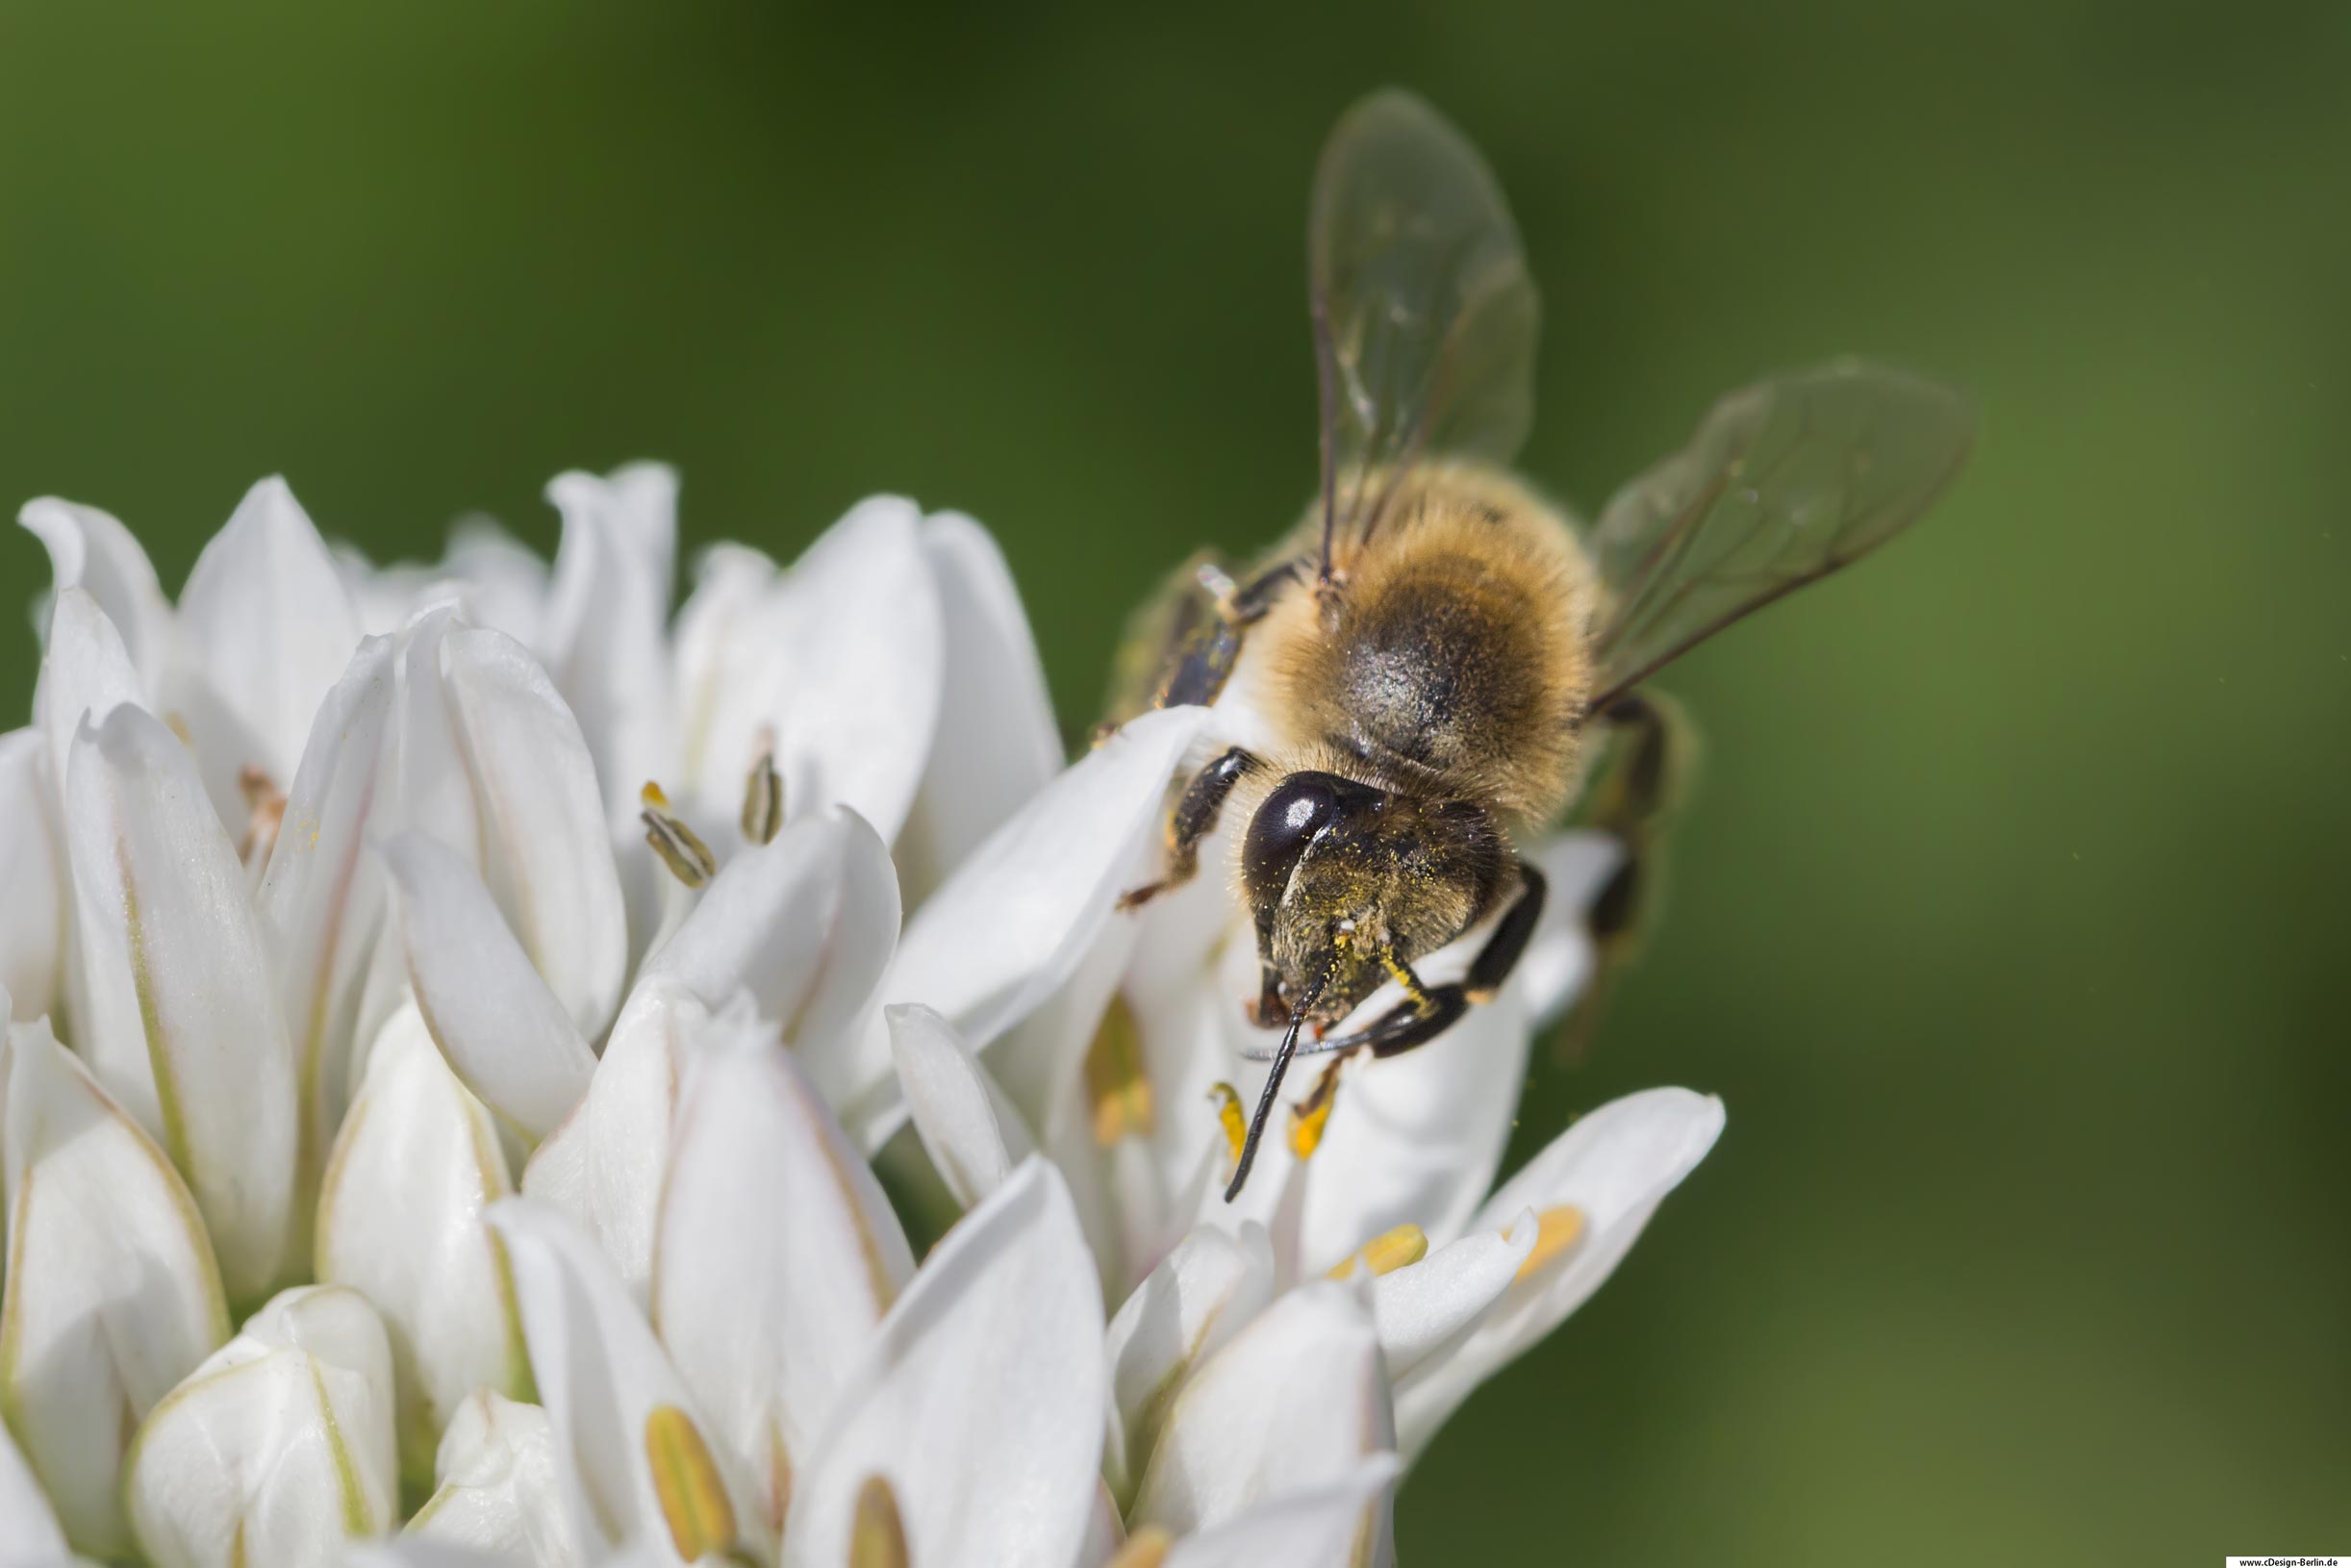 Fliegende Objekte einzufangen ist nicht leicht und es erfordert ein wenig Geduld. Bienen sind unermüdlich, wenn sie ihren Nektar sammeln. Im Vordergrund dieses Bildes ist eine weiße Blüte deren Blütenstaub deutlich erkennbar wird. Auf dieser sitzt ein fleißiges Bienchen, welches den Blütenstaub sammelt. Sein Rüssel ist ausgefahren. Jedes einzelne Haar ist auf ihr zu sehen und ihre Flügel aufgestellt, zum Abflug bereit. Auf dem rechten Flügel sind ihre Adern zu sehen. Durch das Bukeh des Makroobjektives ist die Wiese zu einer grünen Fläche geworden, wobei das grün in mehreren Tönen schimmert. Der Maler hätte es nicht besser malen können.